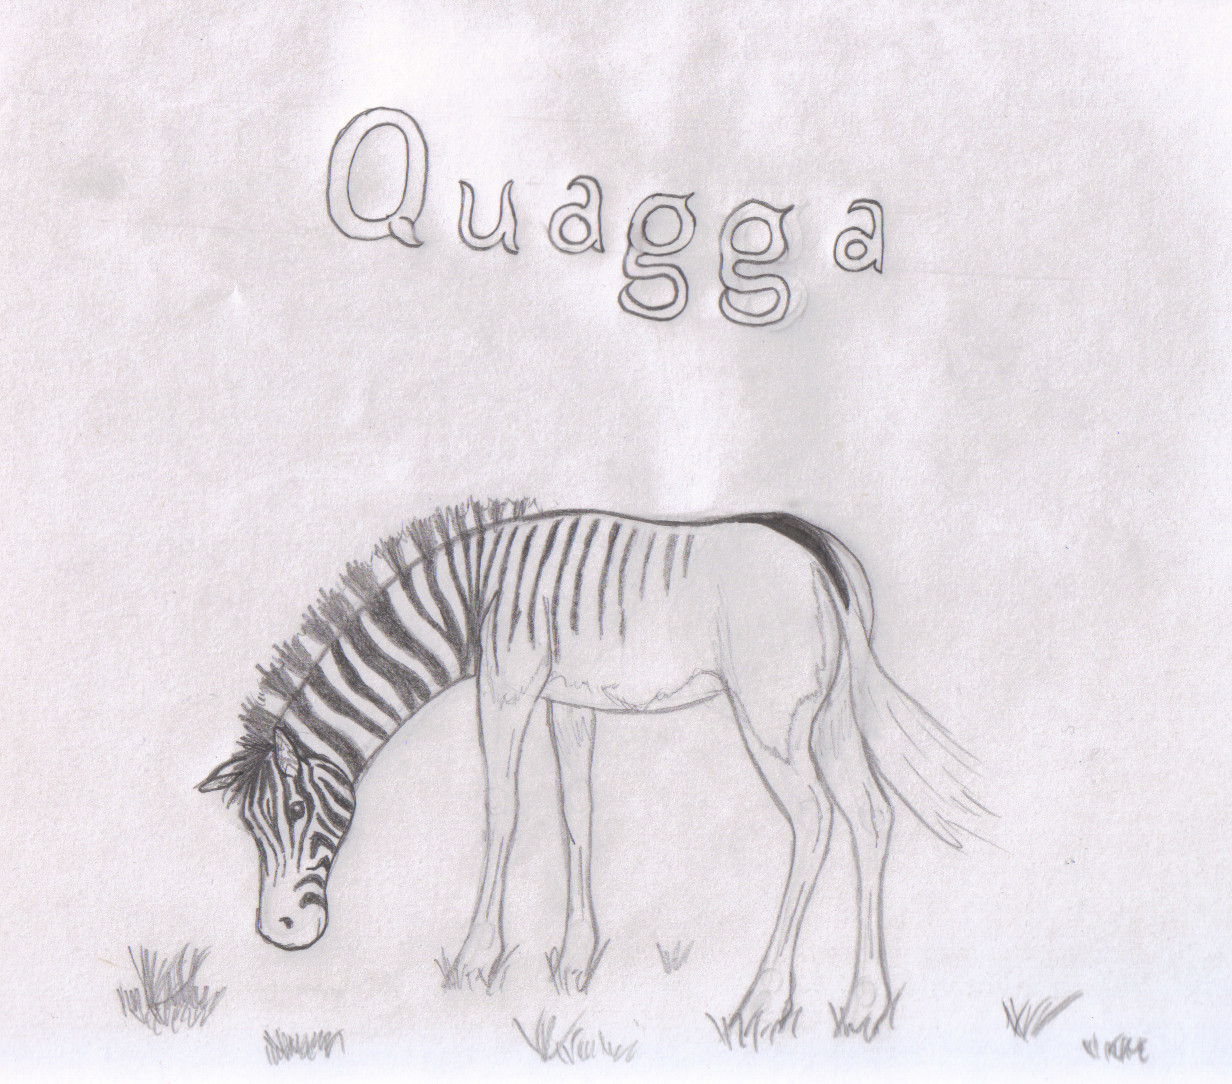 Quagga (b/w) by SilverLiningCloudy